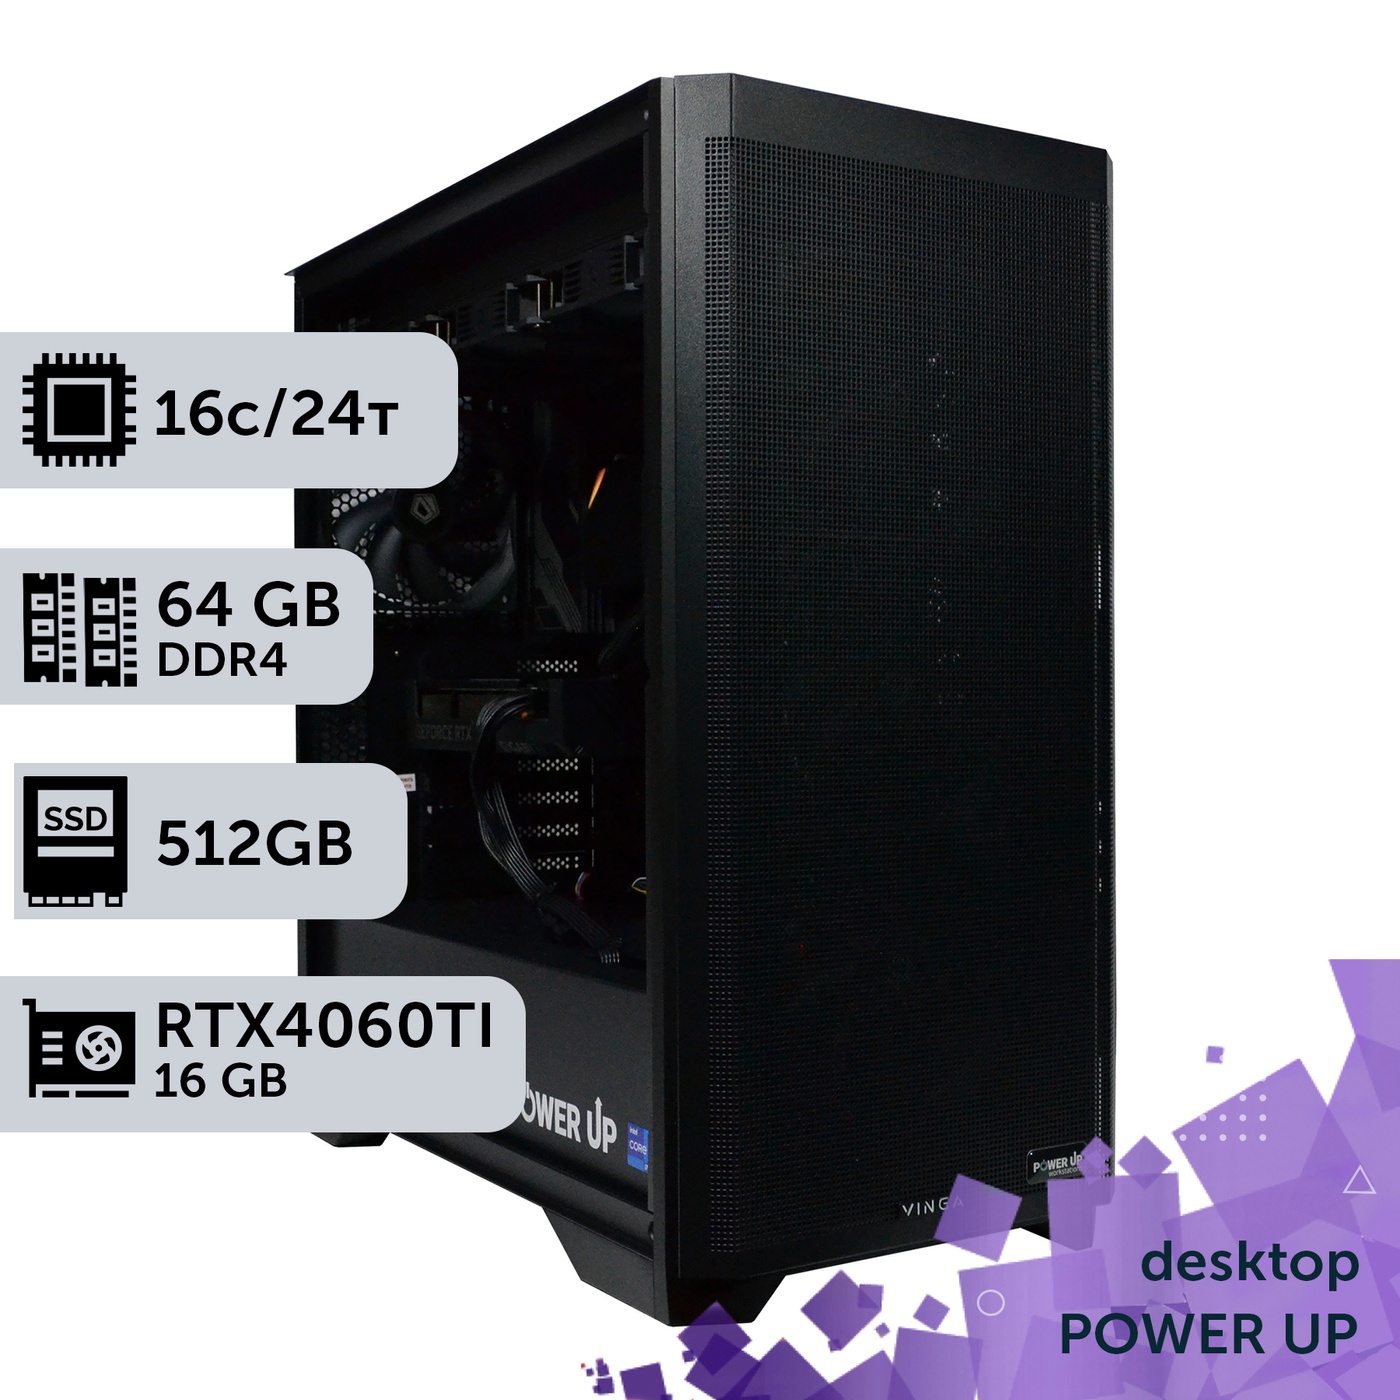 Робоча станція PowerUp Desktop #285 Core i7 13700K/64GB/HDD 1TB/SSD 512GB/GeForce RTX 4060Ti 16GB